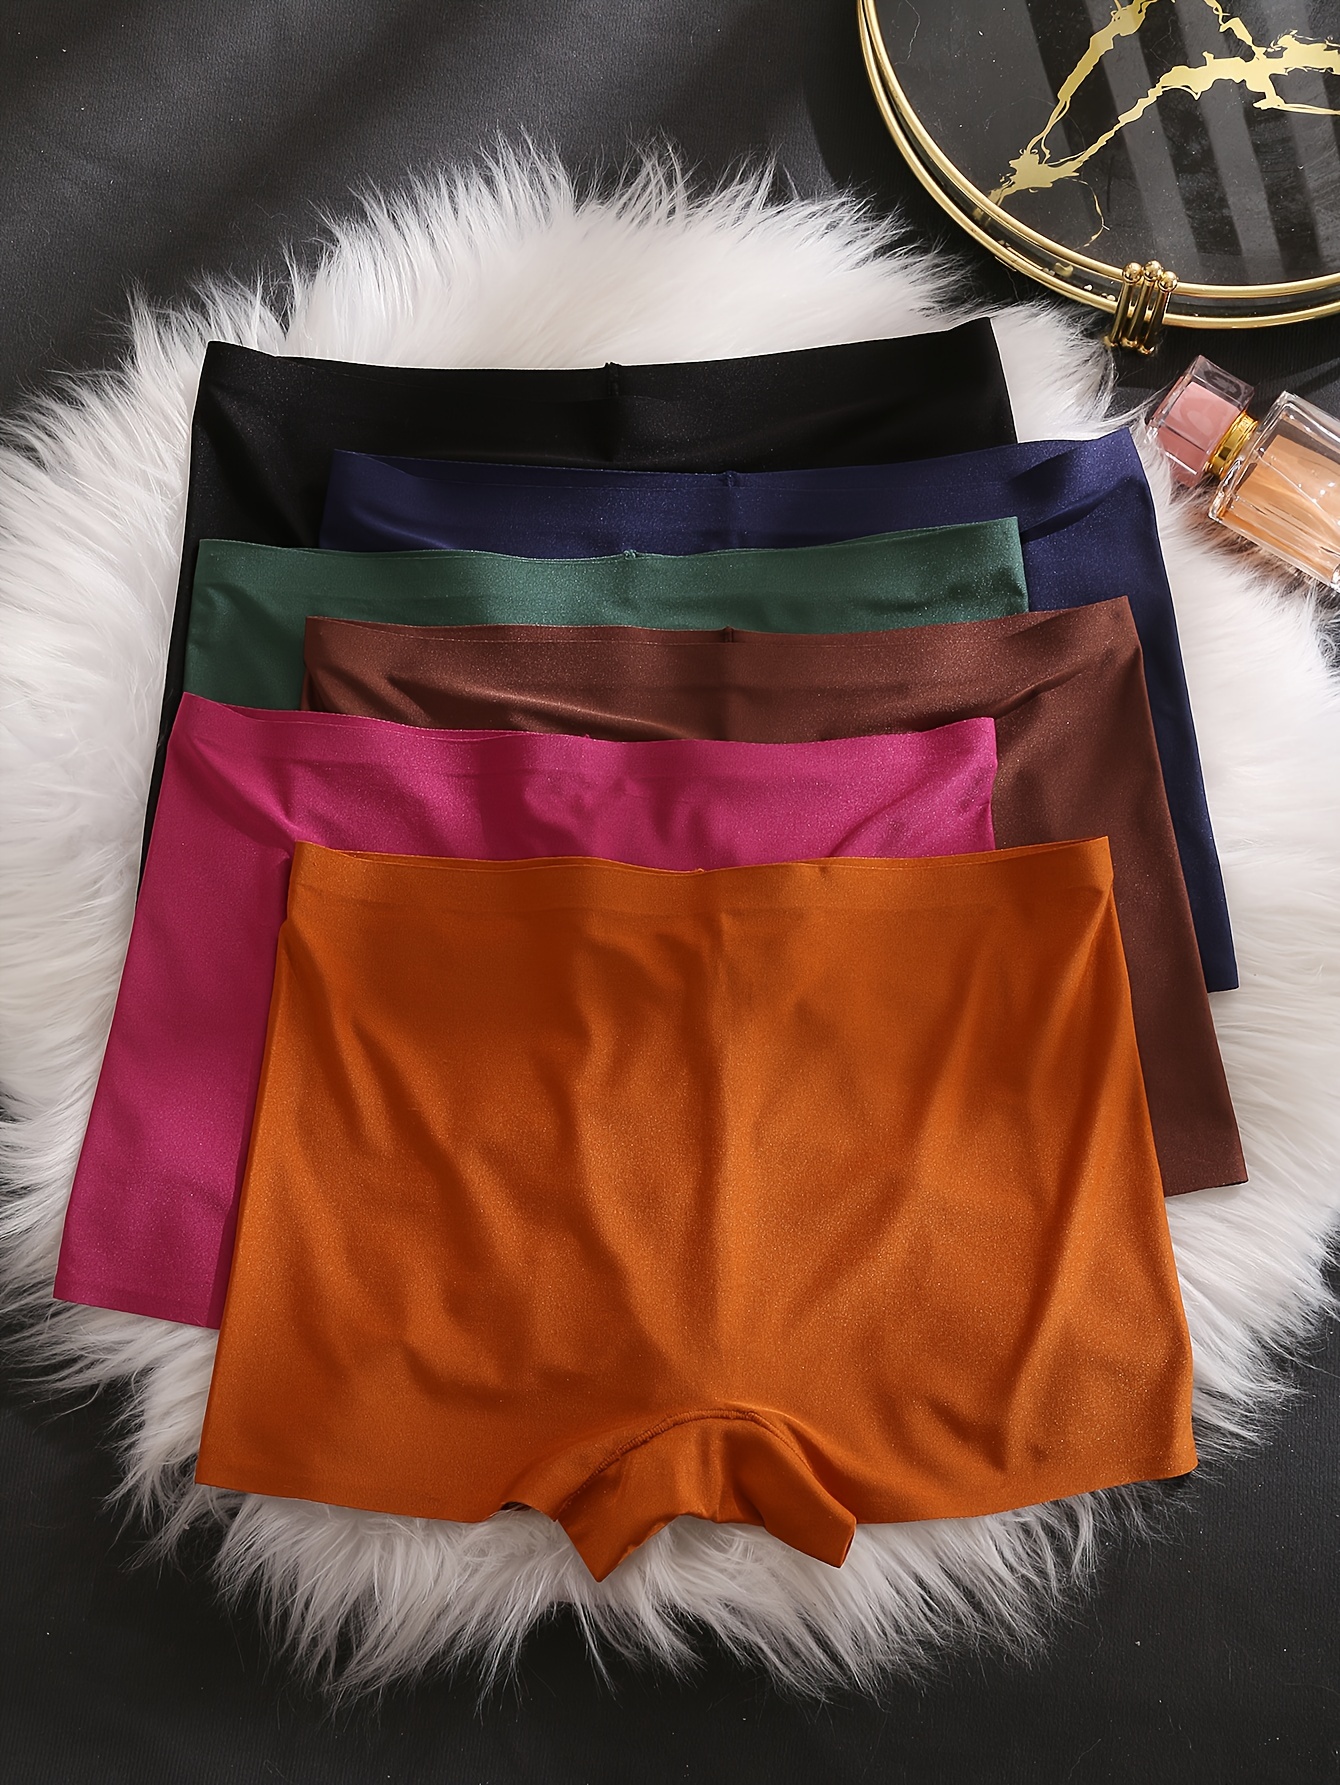 4pcs Seamless Boyshort Panties, Soft & Comfortable Low Waist Panties